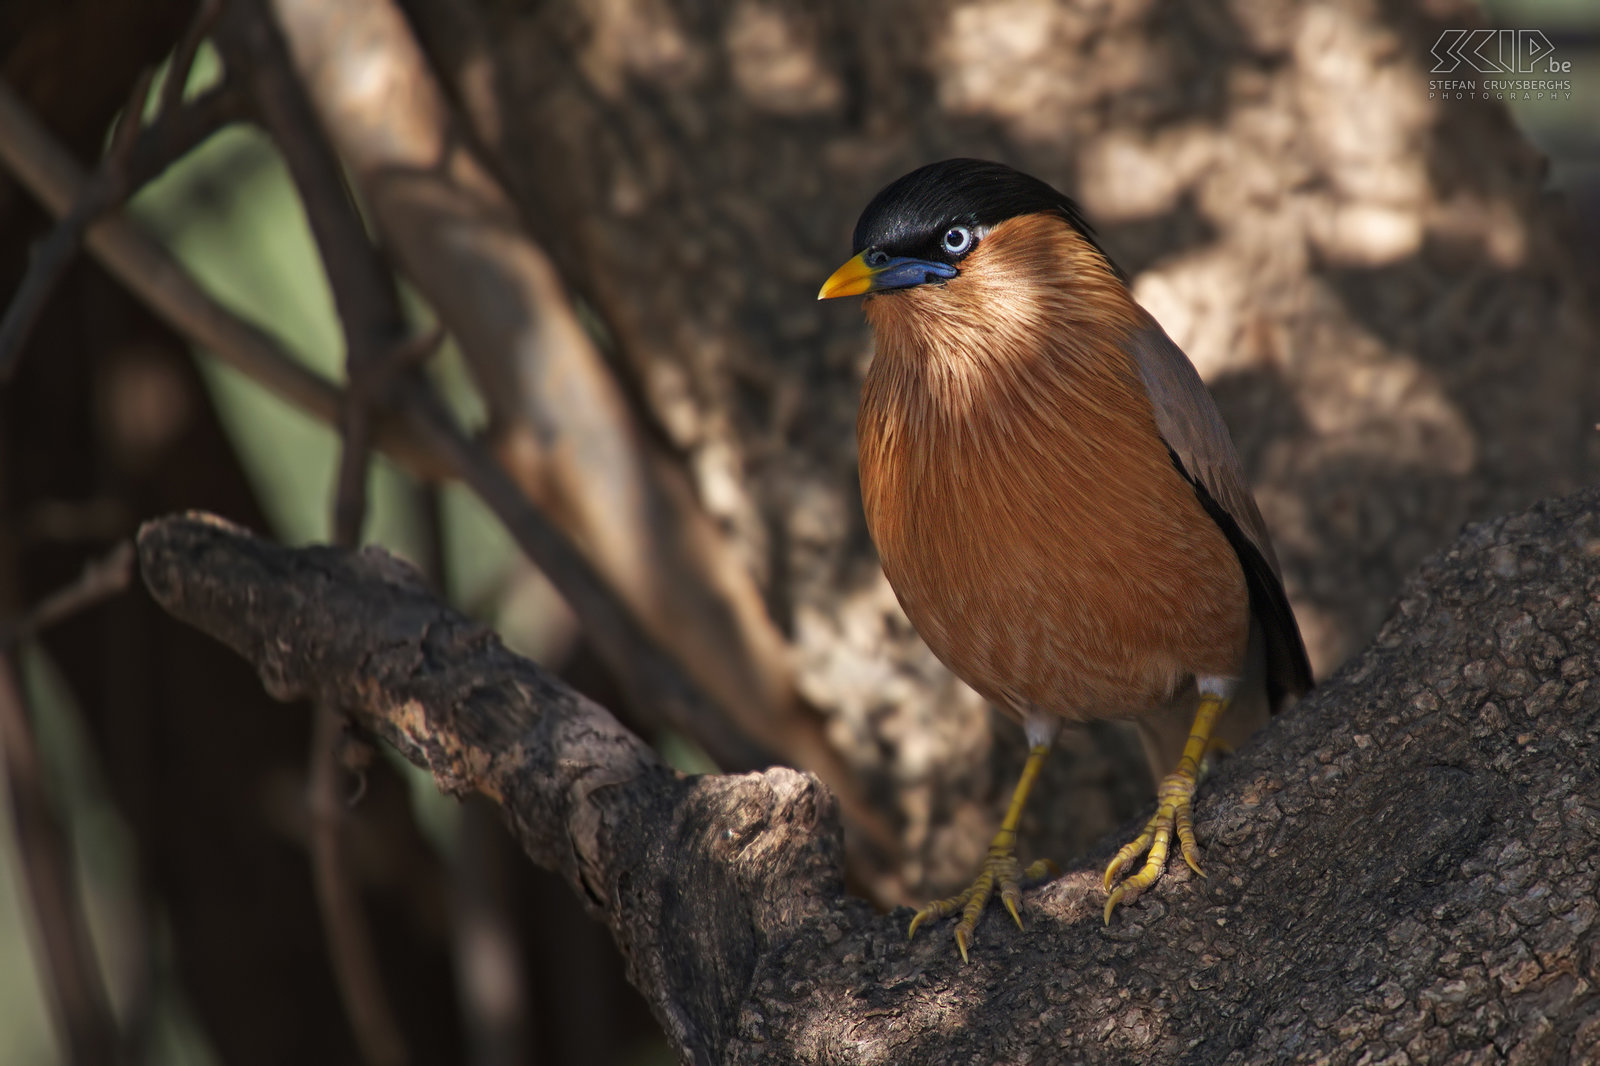 Keoladeo - Pagodespreeuw Pagodespreeuw (Brahminy starling/Sturnia pagodarum) op een boom in Keoladeo nationaal park. Keoladeo is een prachtig vogelreservaat in Rajasthan tussen Jaipur en Agra. Dit nationaal park is een moerasland en er zitten duizenden vogels, vooral tijdens het winterseizoen. Het is raadzaam om een riksja te huren om het park te verkennen. Stefan Cruysberghs